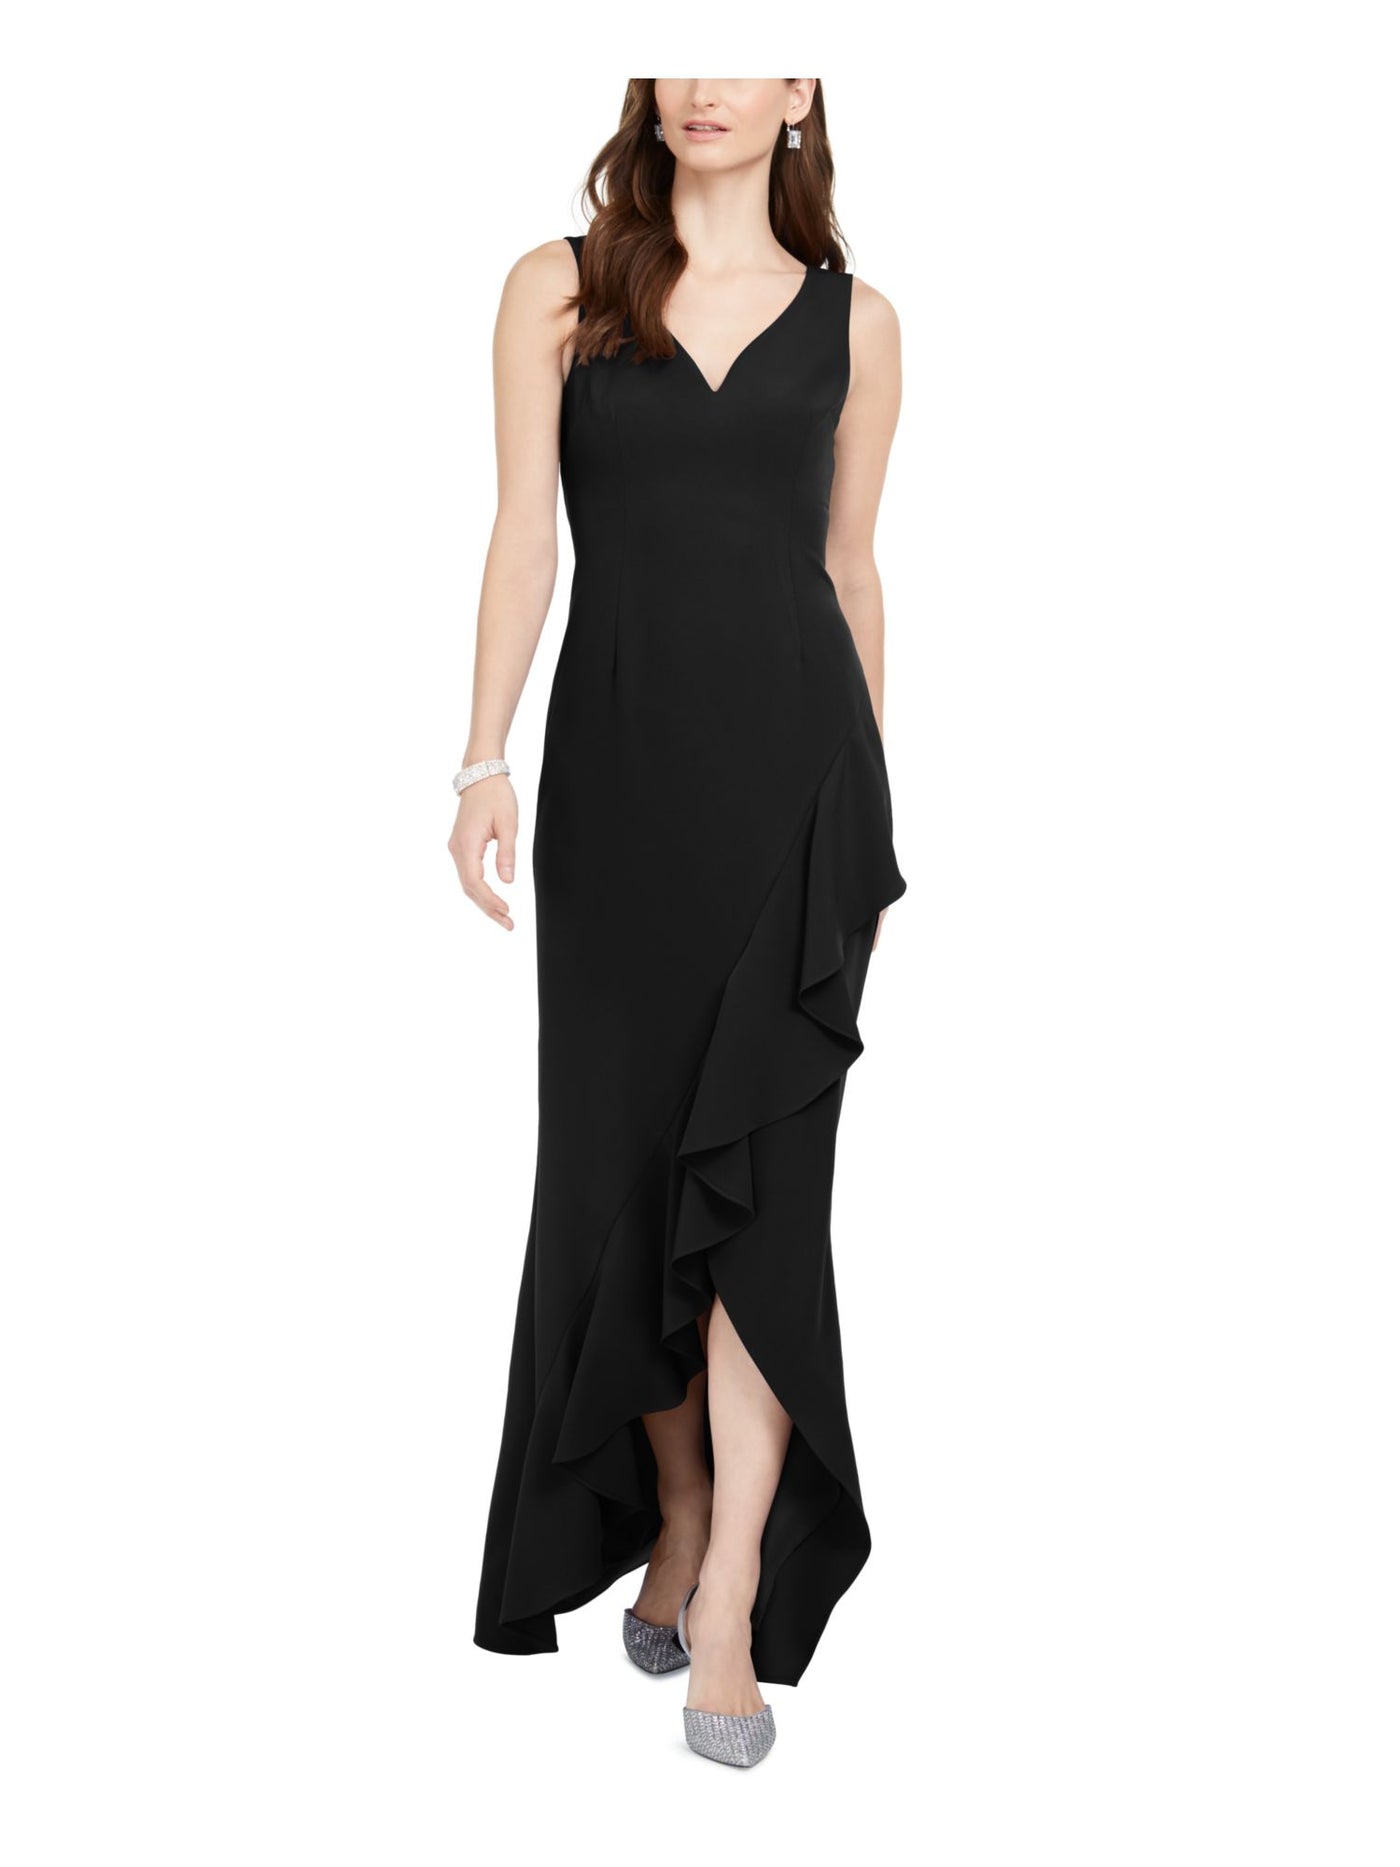 ADRIANNA PAPELL Womens Black Slitted Sleeveless V Neck Full-Length Formal Sheath Dress 12